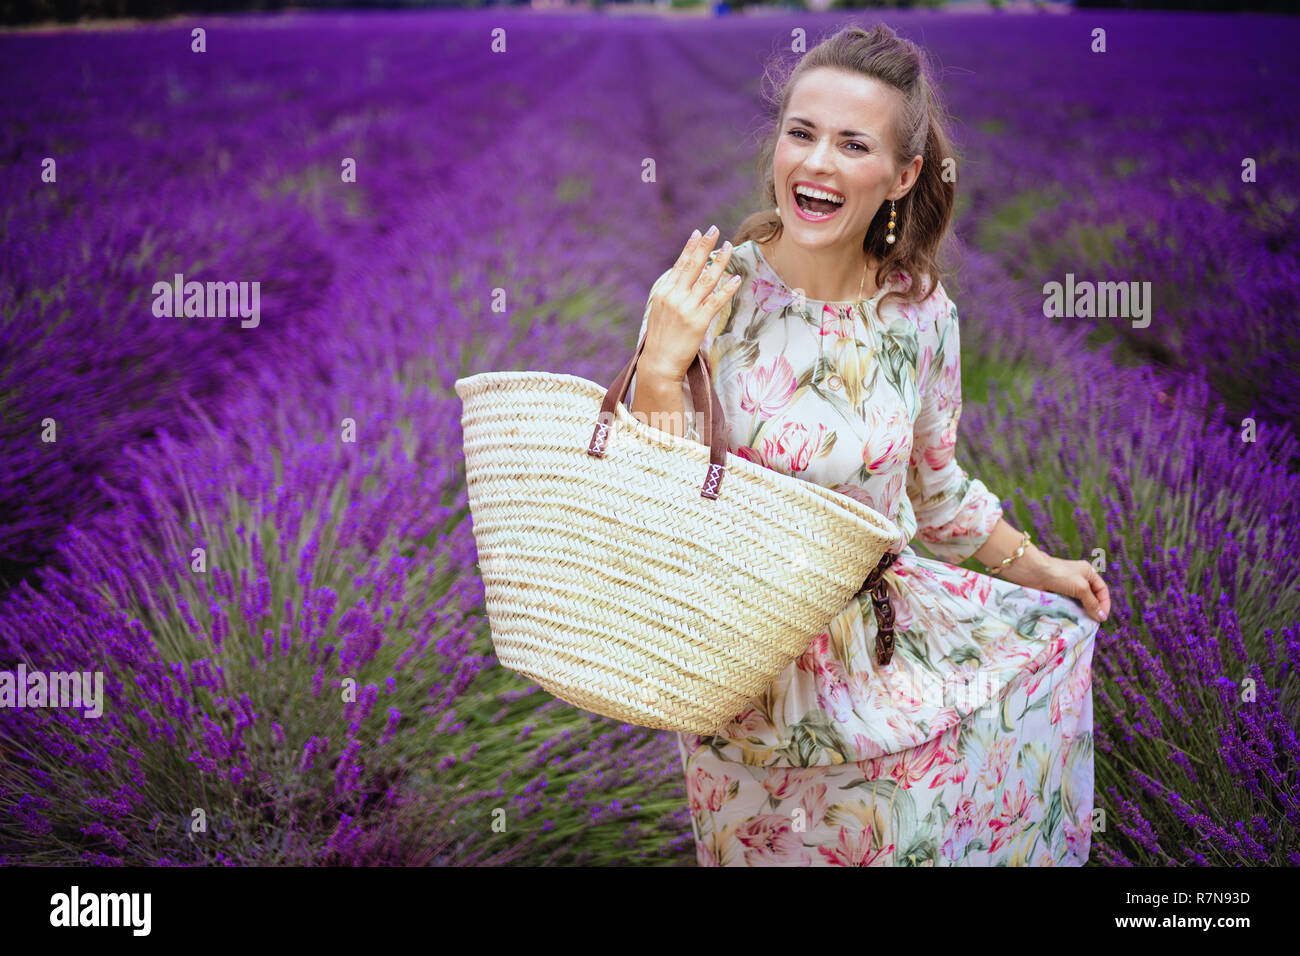 Glückliche junge Frau mit Stroh Beutel in lavendelfeld in der Provence, Frankreich. Lavendelfelder der Provence - ist eine unvergessliche Reise. Verpassen Sie nicht die Ama Stockfoto